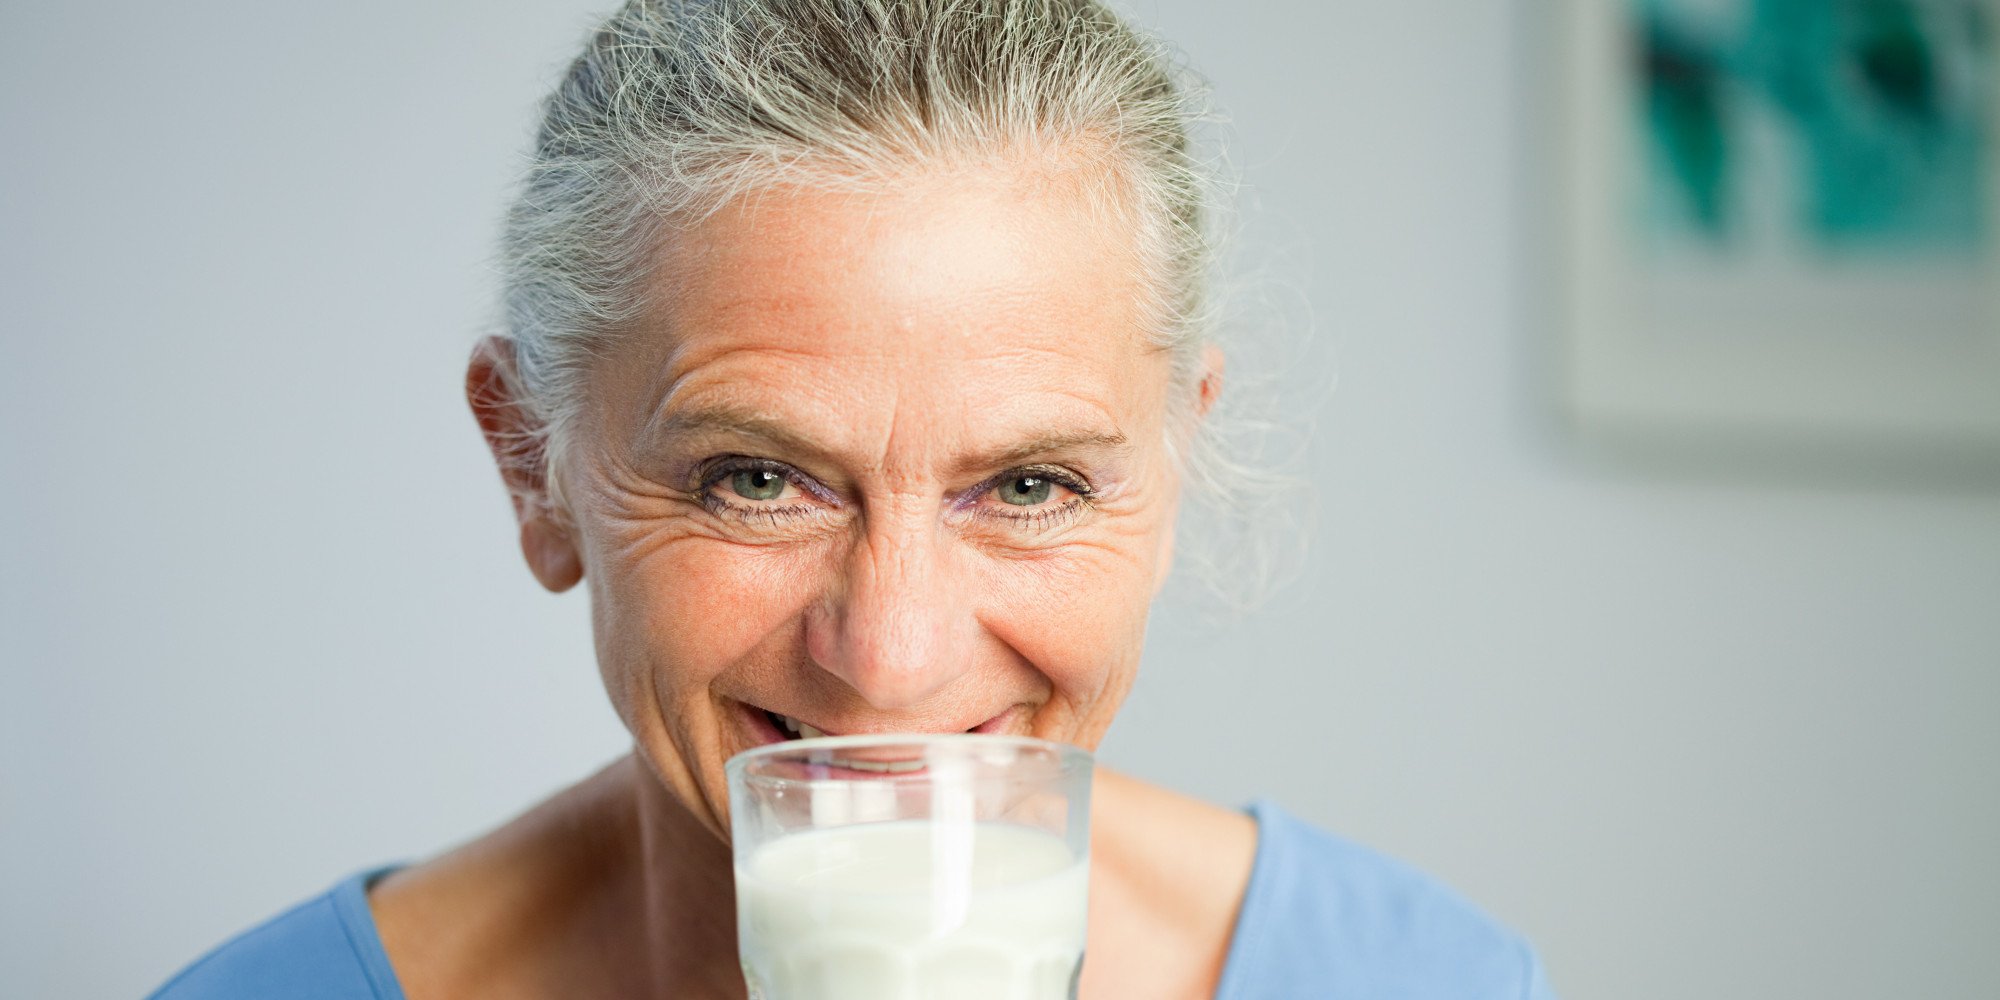 Μπορεί ένα ποτήρι γάλα να καθυστερήσει την εμμηνόπαυση;